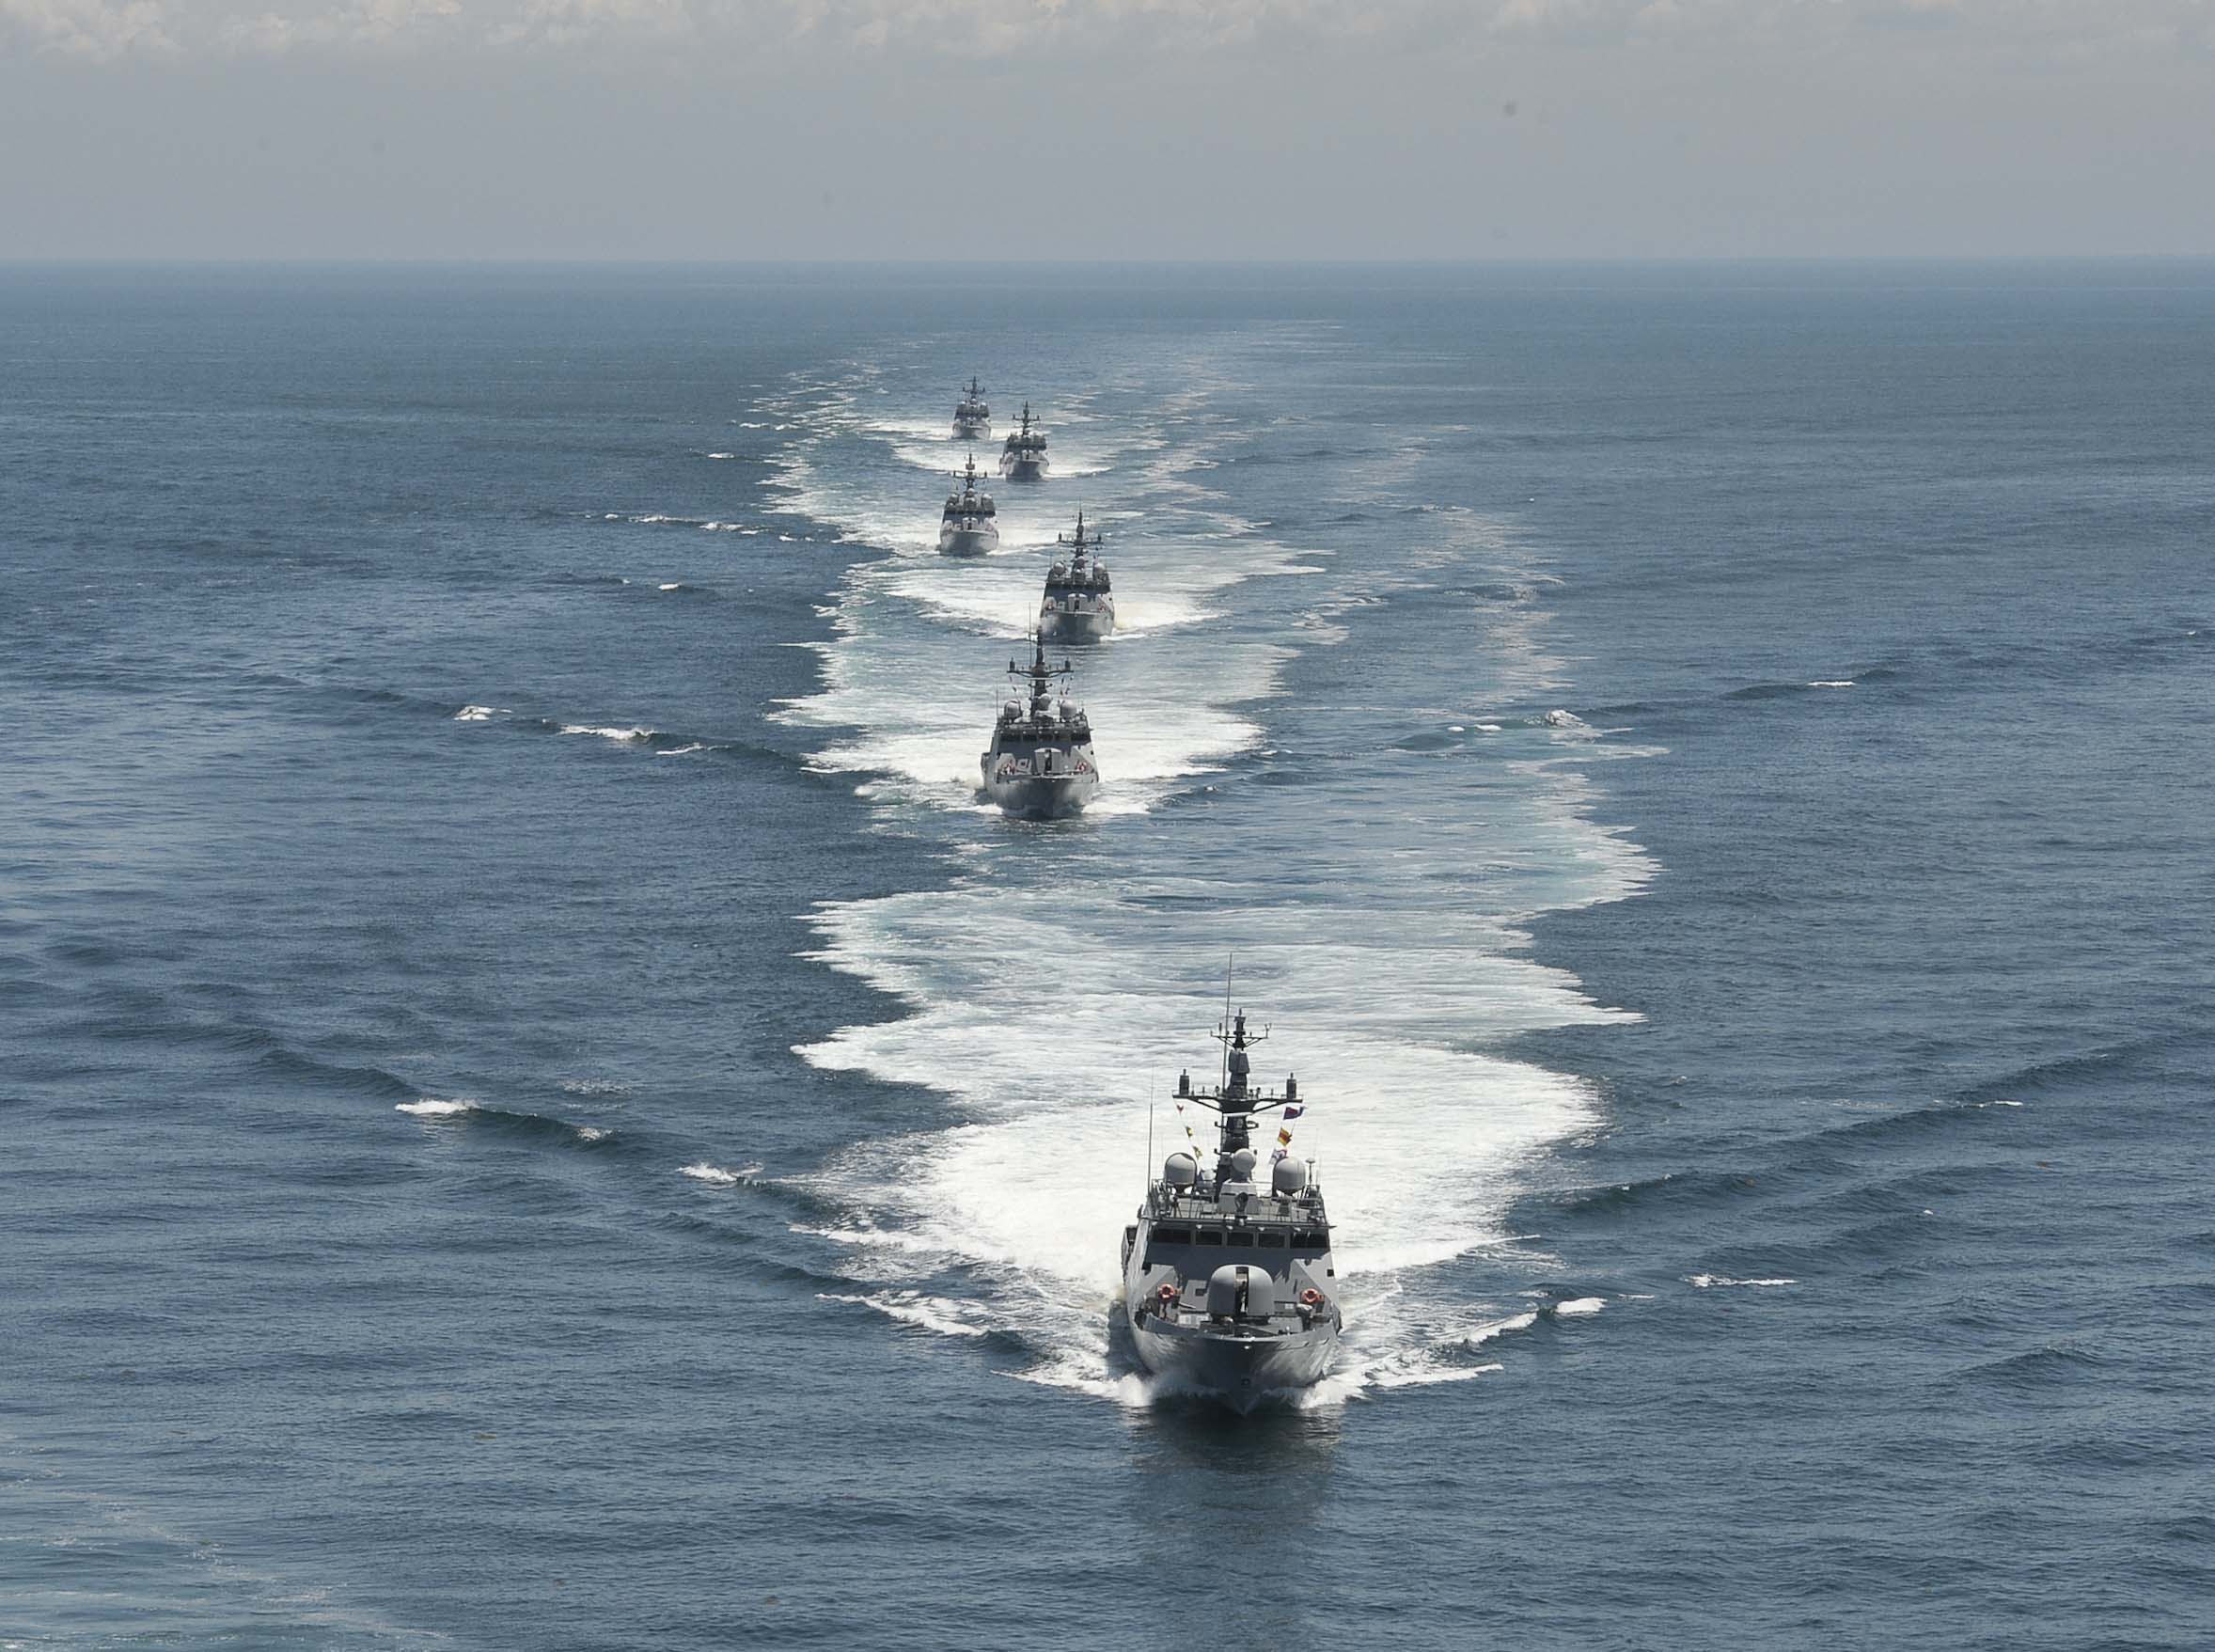 제2연평해전 당시 전사한 여섯 용사의 이름을 딴 유도탄고속함(PKG) 6척이 해상 기동 훈련을 하고 있다. (해군 제공)